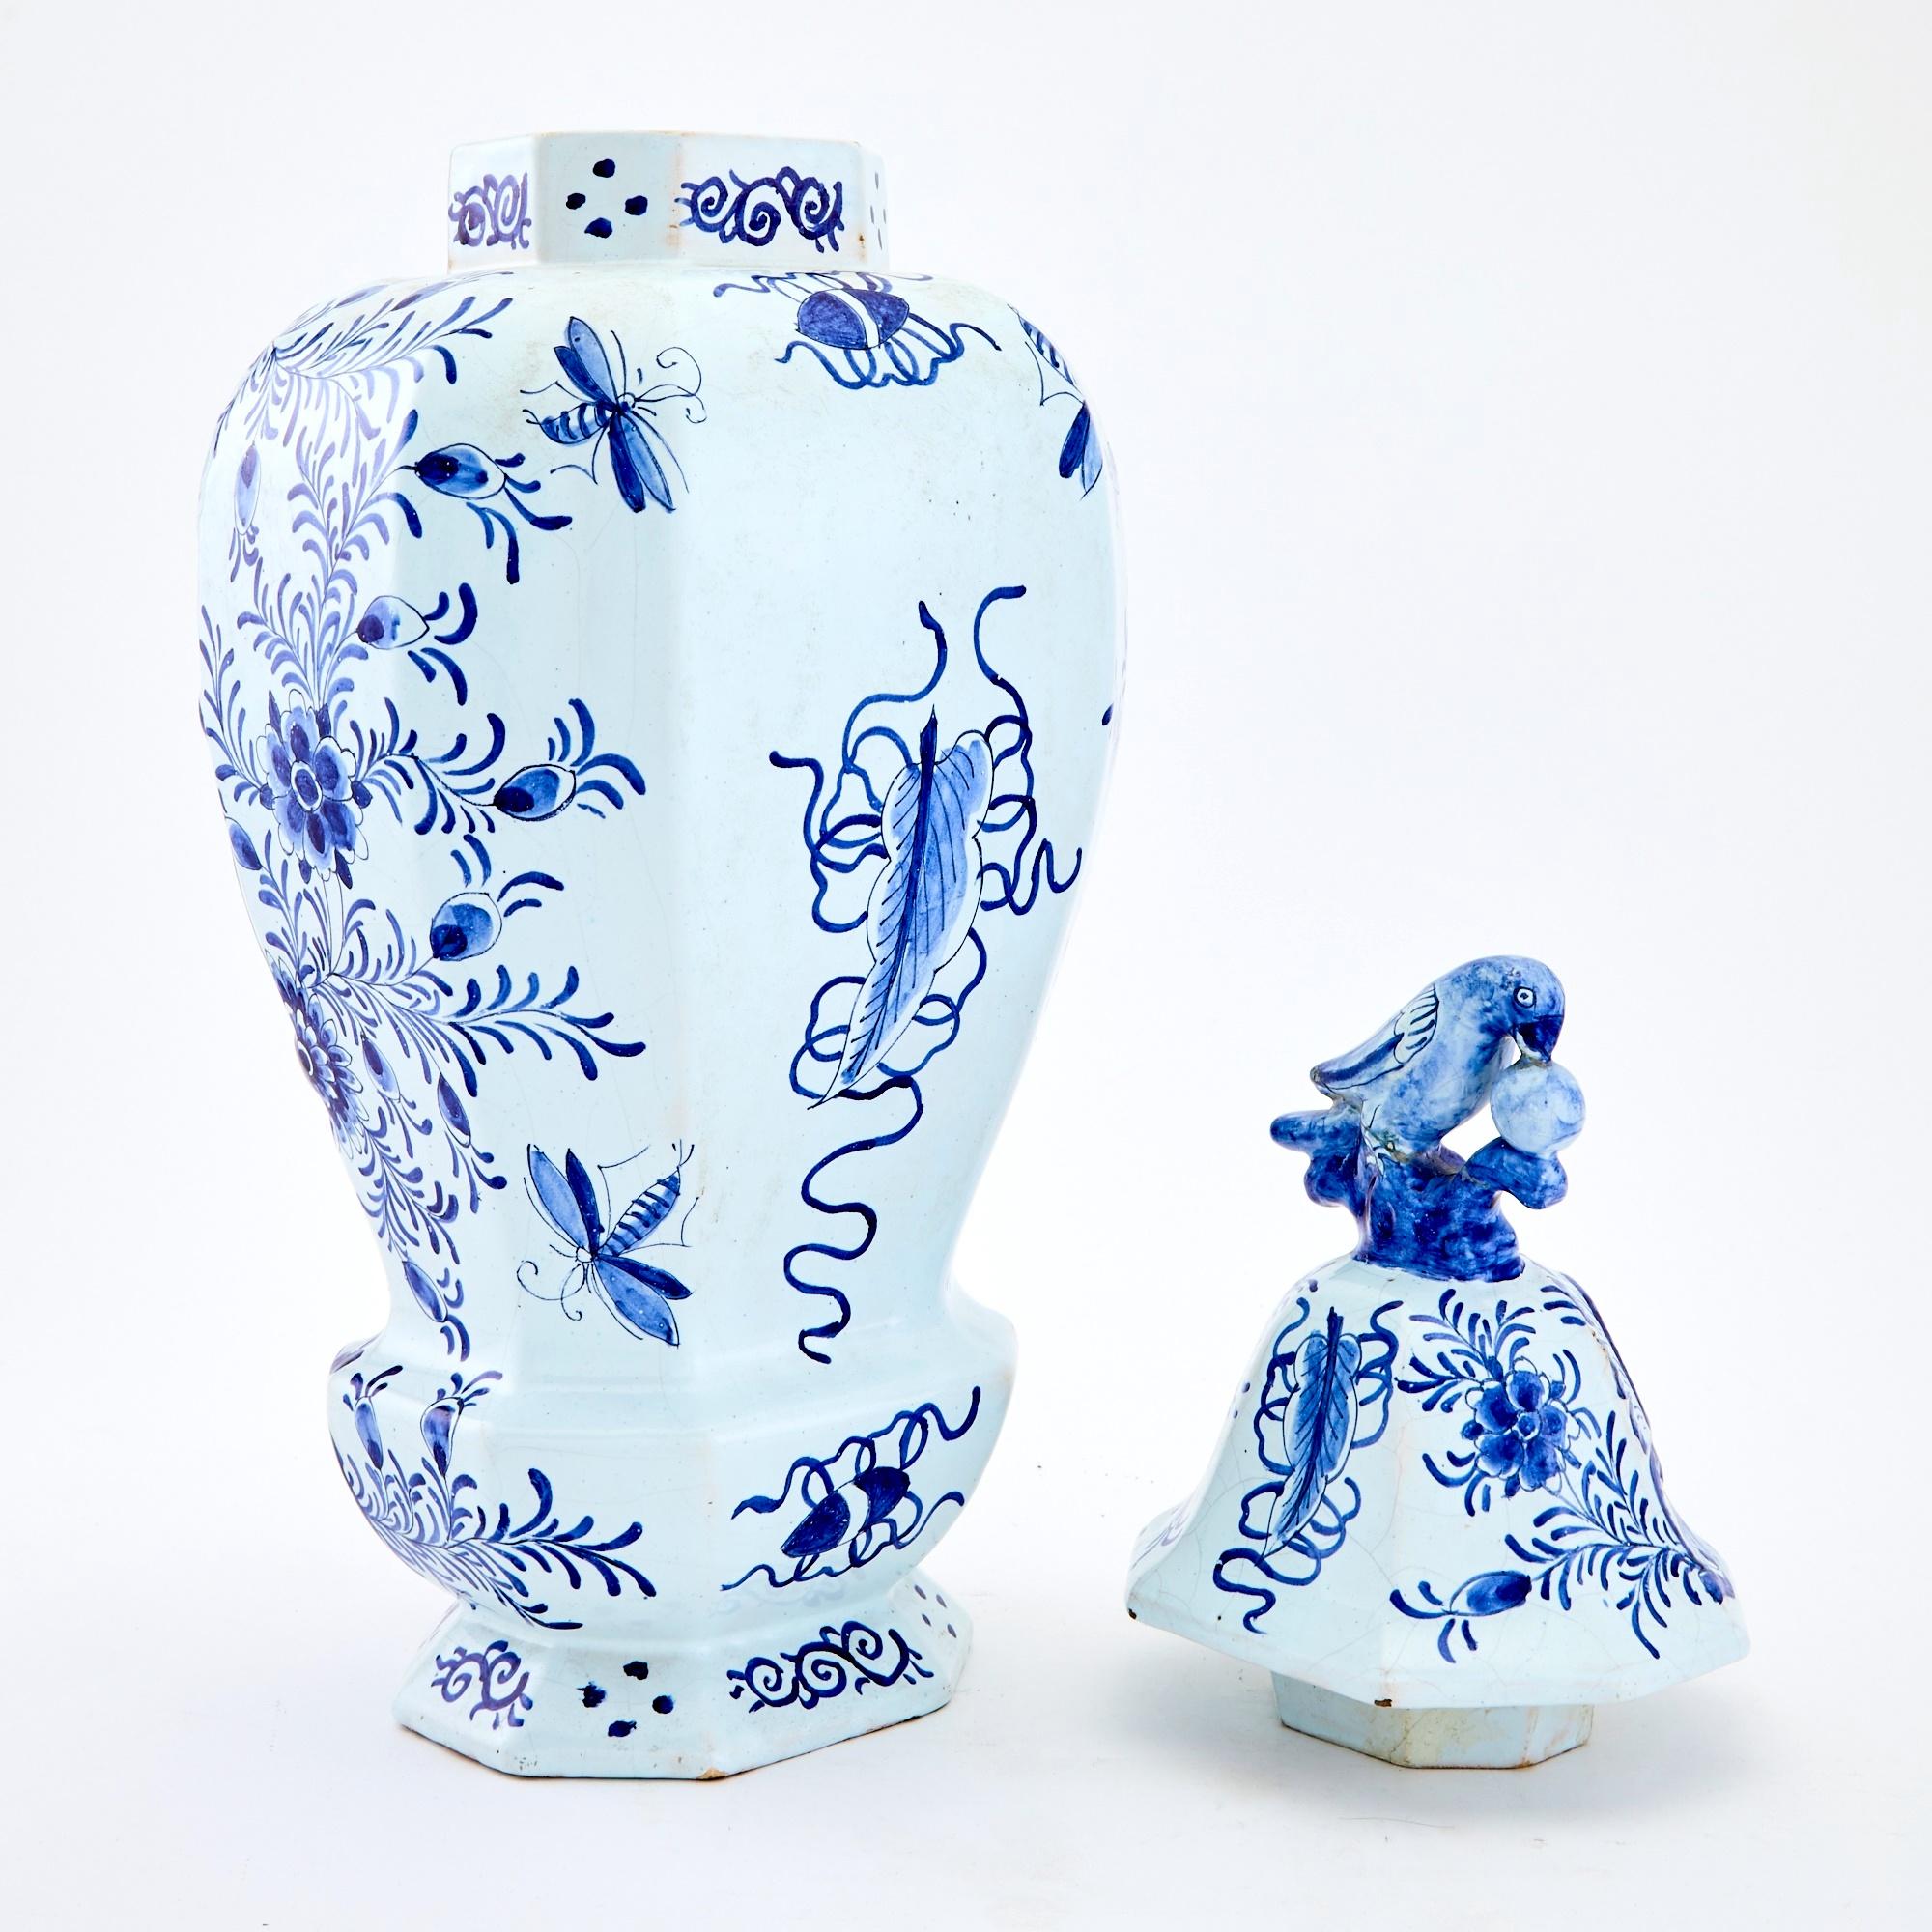 Tauchen Sie ein in die bezaubernde Welt des frühen 19. Jahrhunderts mit dieser exquisiten, blau-weiß glasierten Keramikurne aus Delft. Dieses dekorative Stück mit zeitlosem Charme besticht durch die Vogelskulptur, die seine mit einer Krone bedeckte